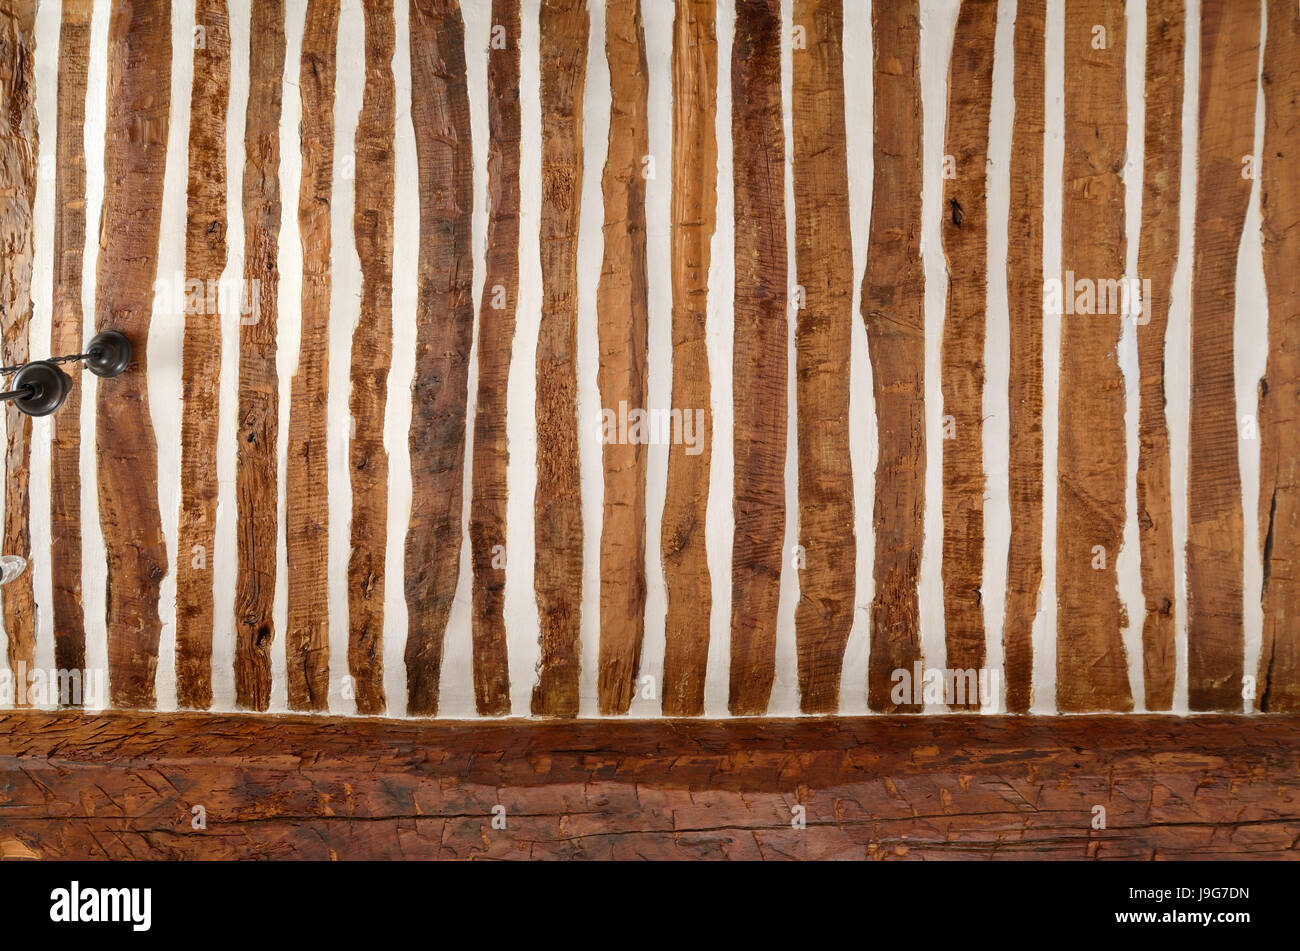 Plafond provençal traditionnel avec une alternance de bandes et de plâtre et enduits (Construction) Provence France Banque D'Images